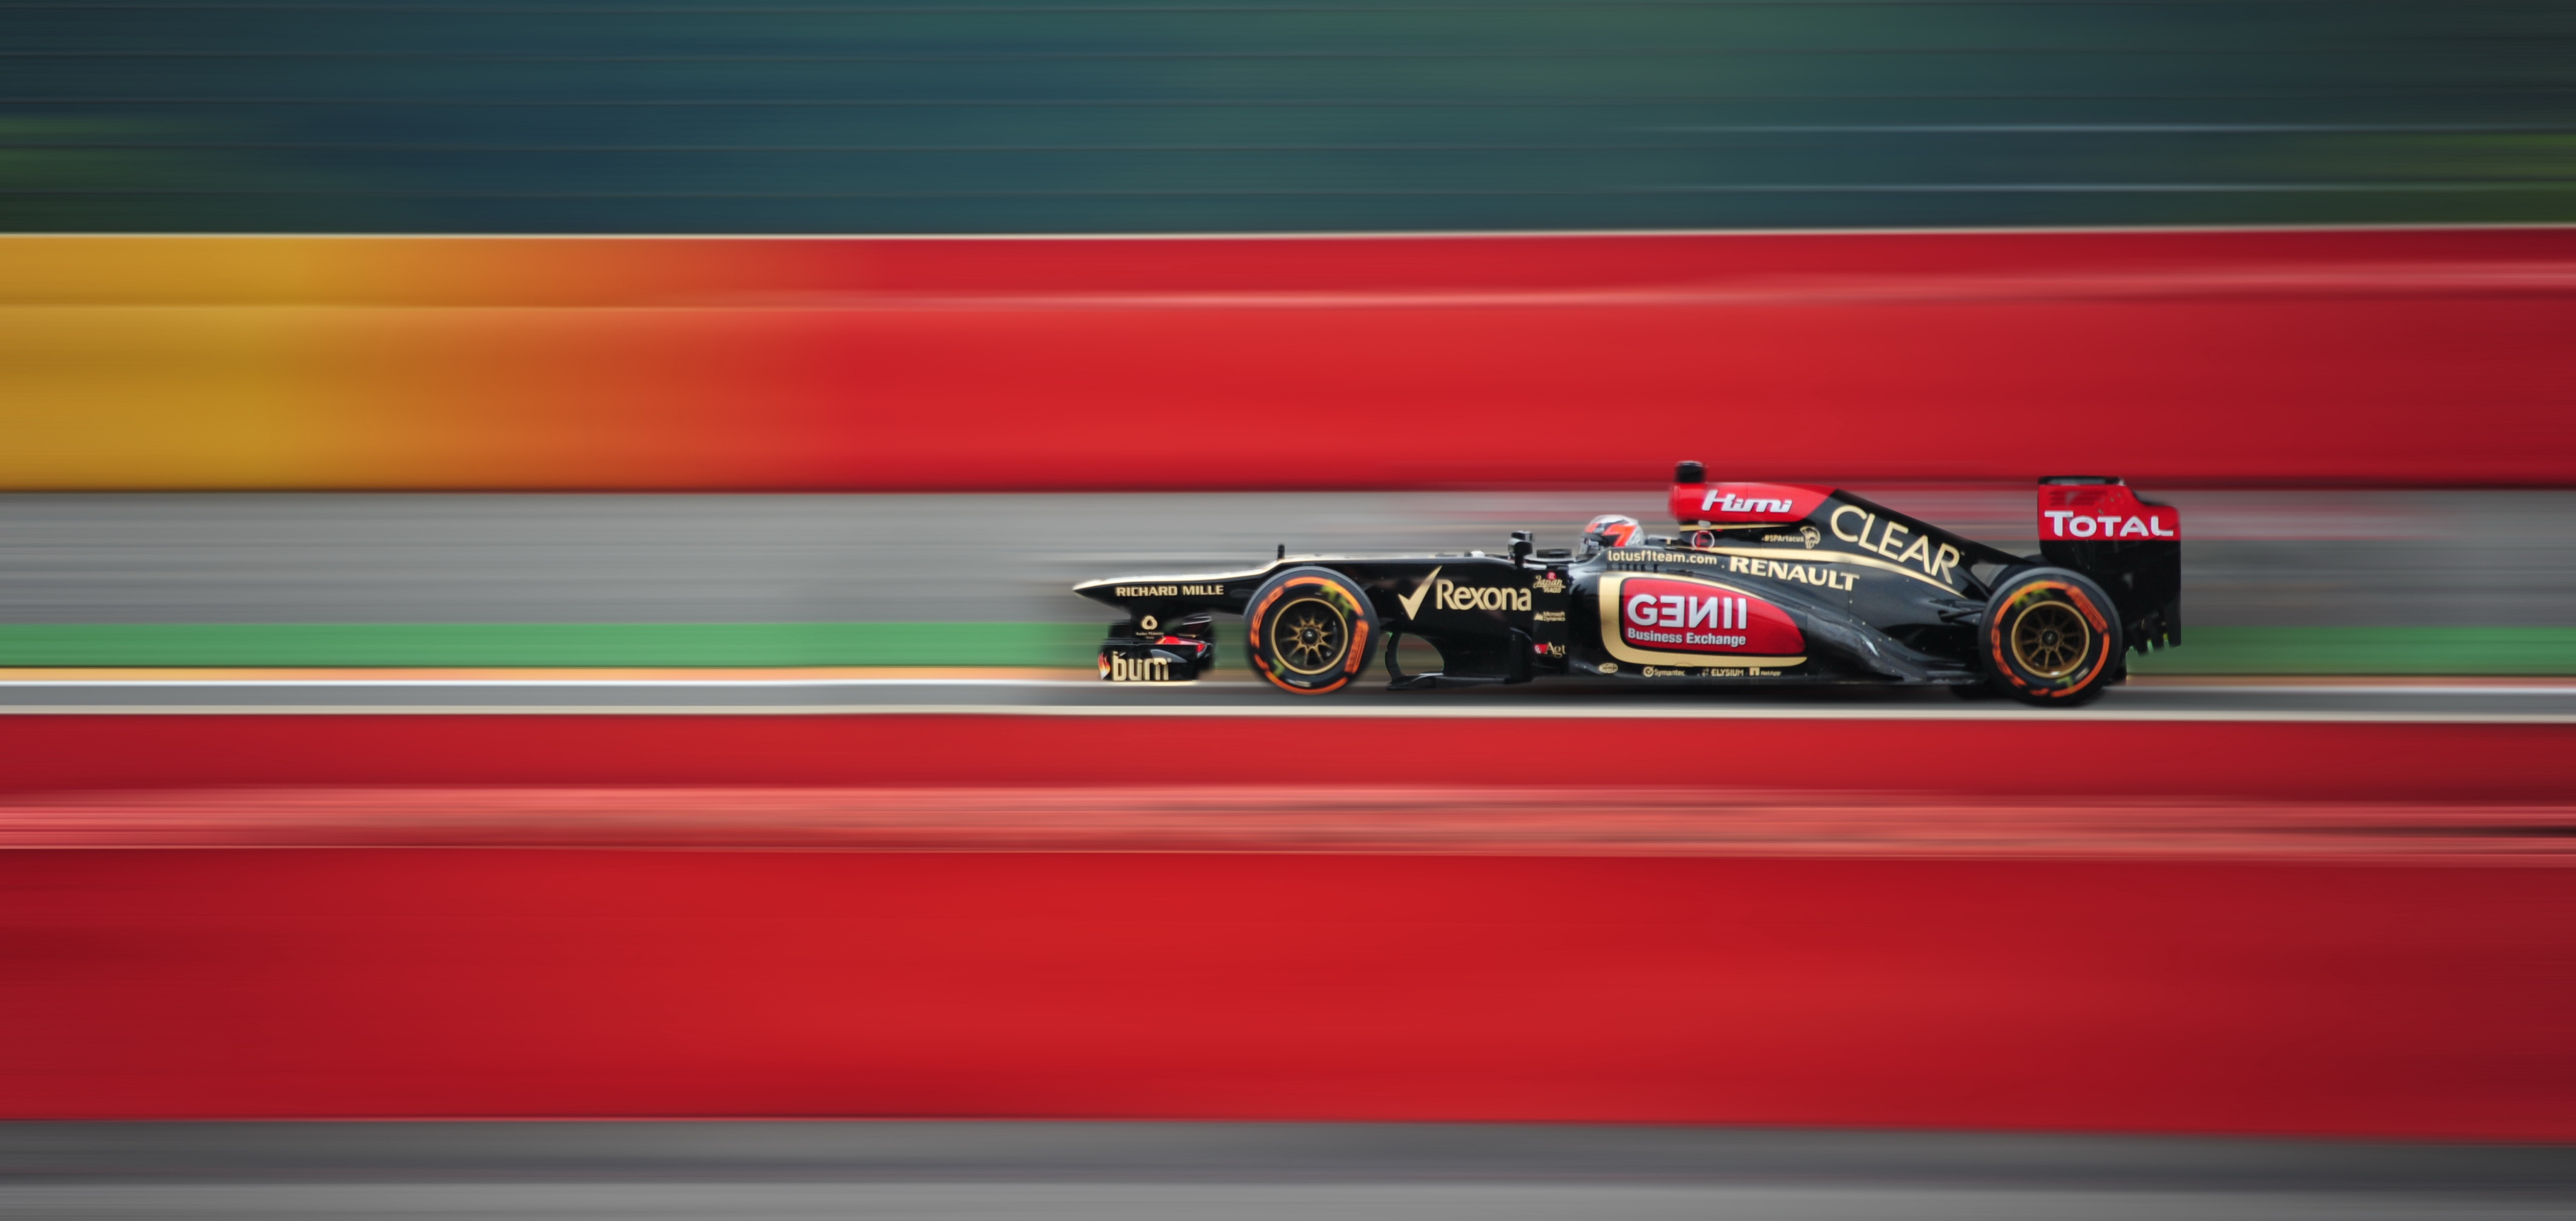 F1 HD Wallpaper